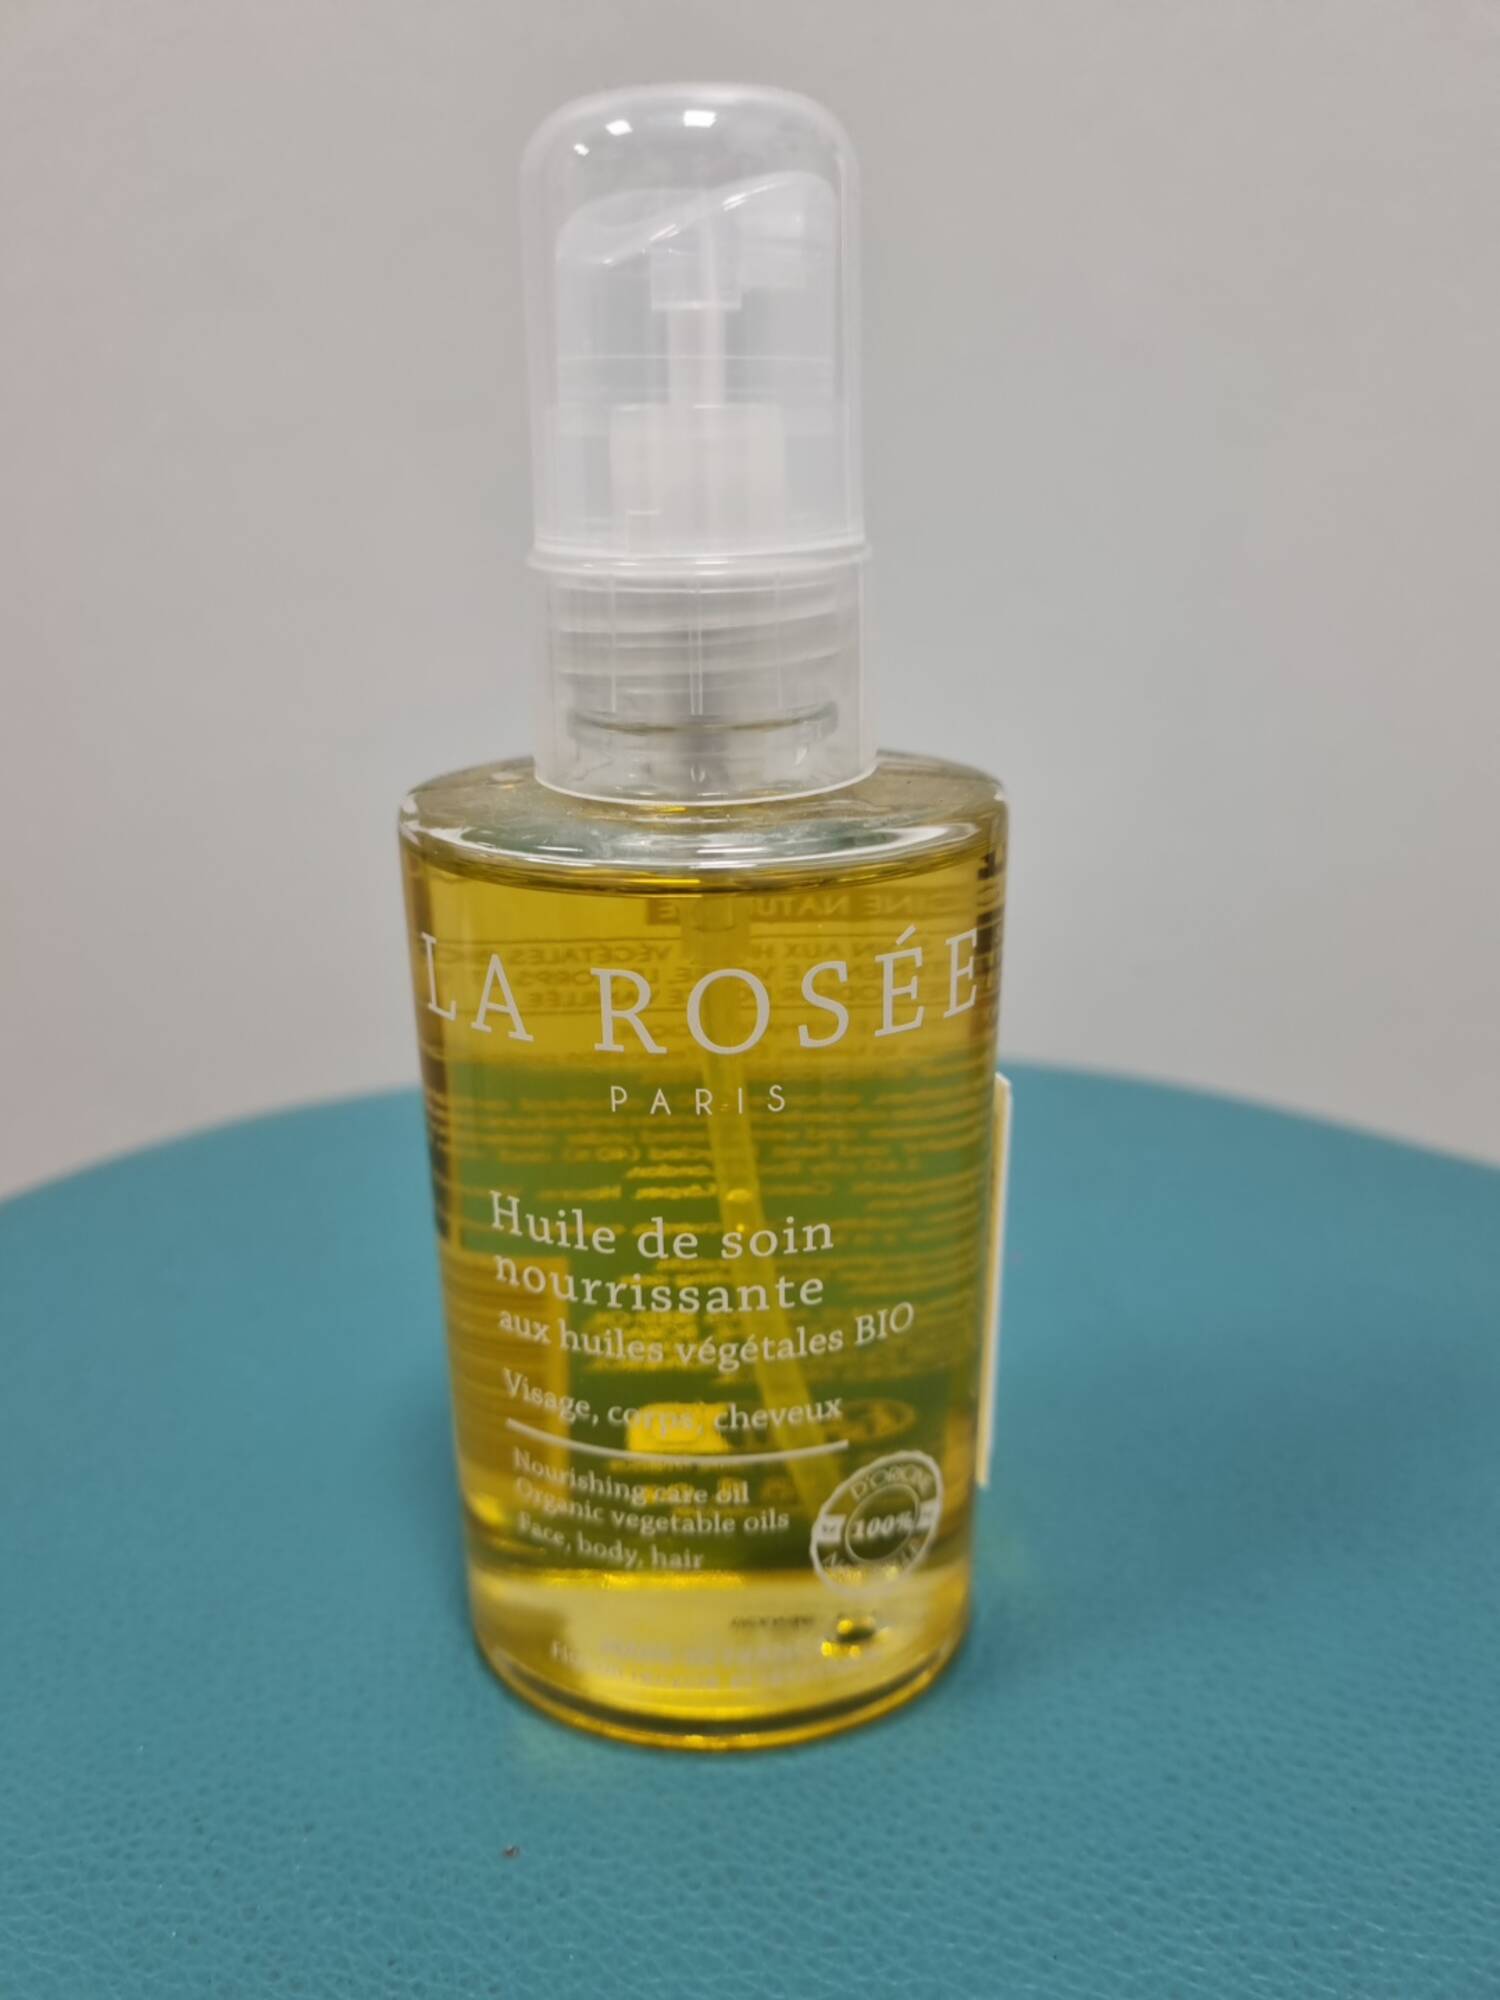 La Rosée huile de soin nourrissante - Visage, corps et cheveux